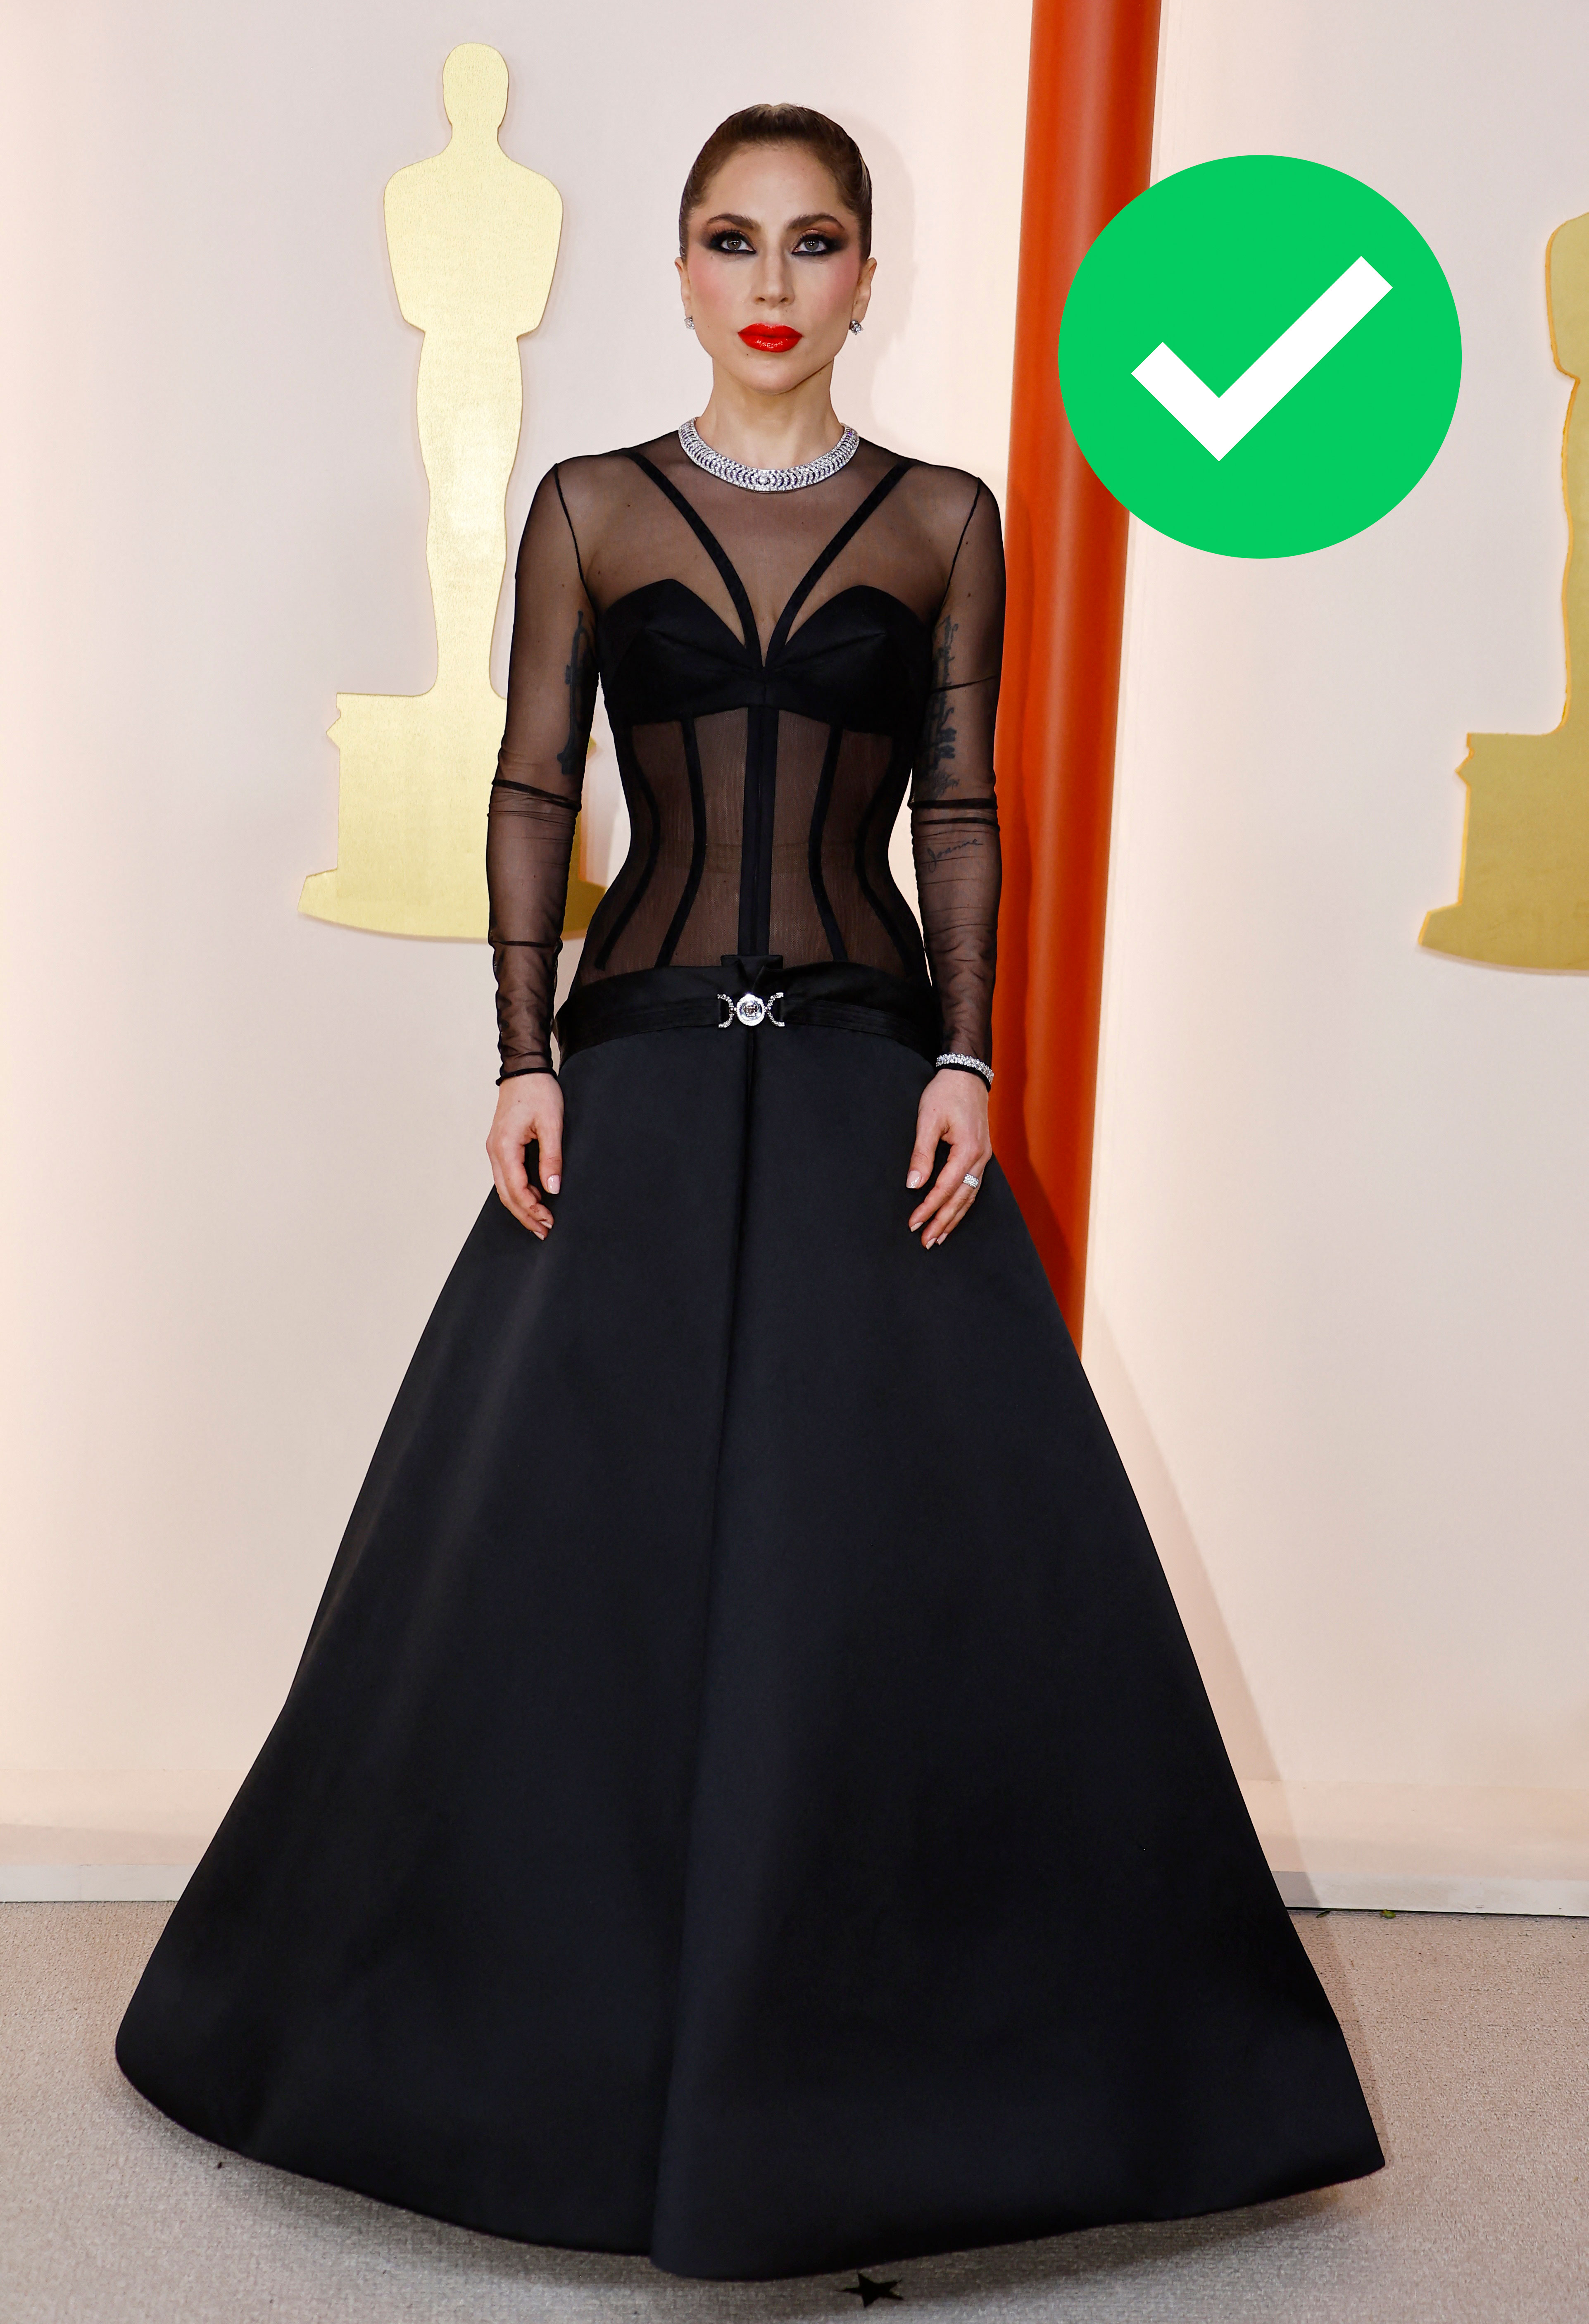 La nominada por la canción de "Top Gun: Maverick", Lady Gaga, se mostró con un impresionante vestido de Versace